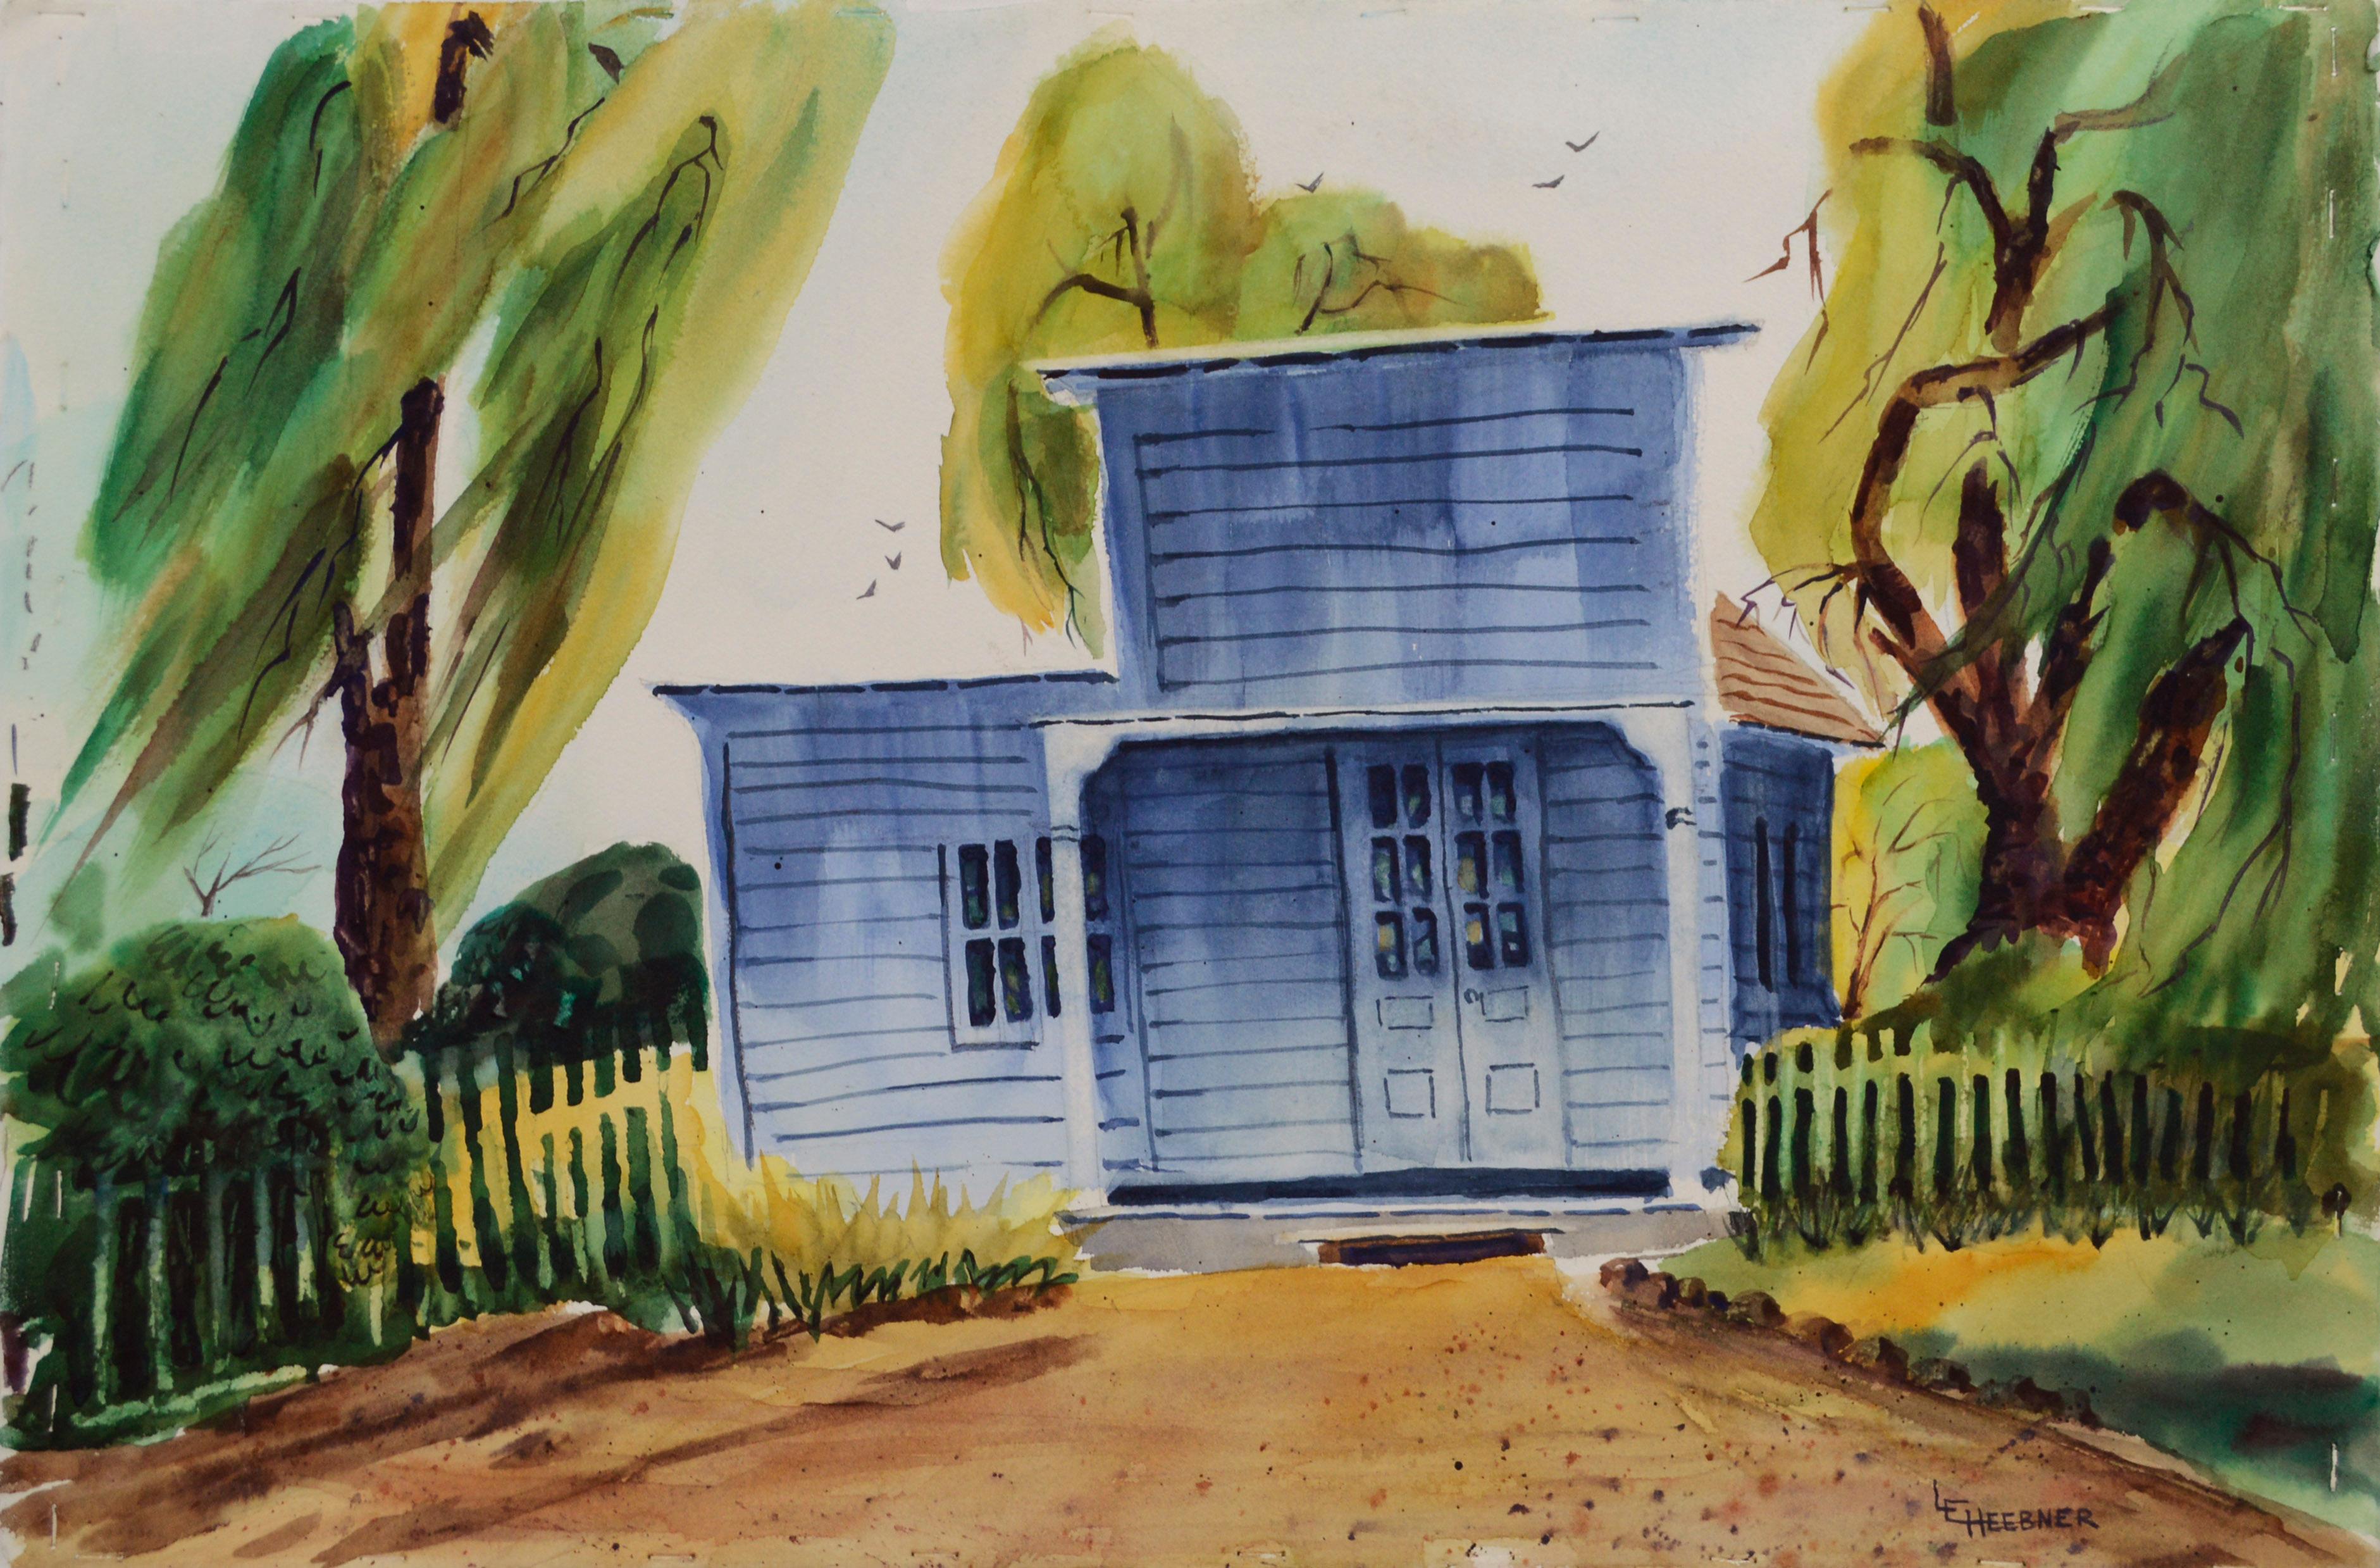 Landscape Art L. Heebner - De retour à la maison, Watsonville, Californie, aquarelle de paysage de ferme bleue 